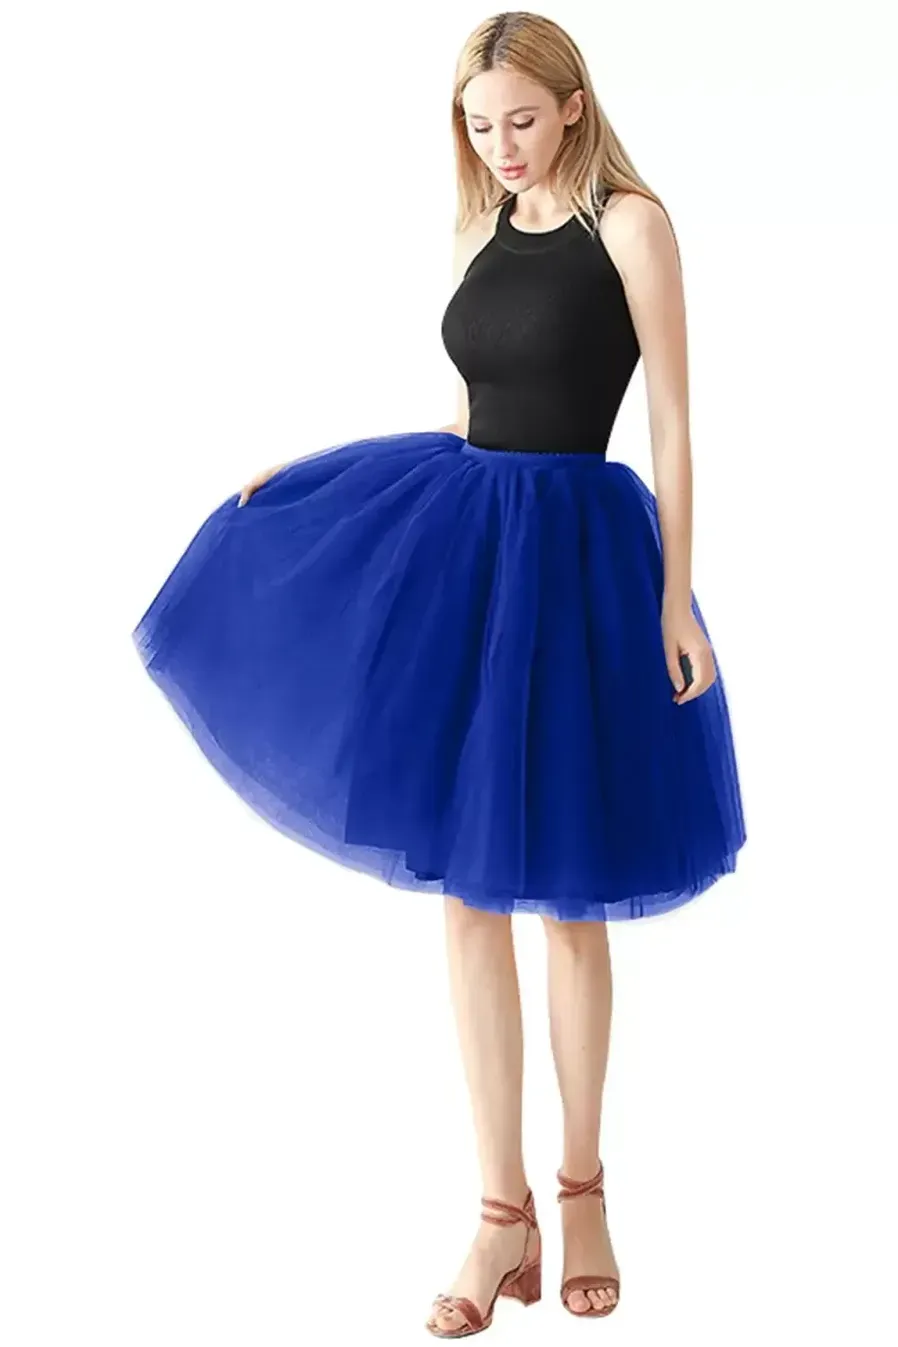 Kobiety dziewczęta podwójne warstwy solidny kolor krótka spódnica petticoats elastyczna pasa linia podsektowa Crinolines sukienka ślubna impreza zużycie CPA1697 C0523